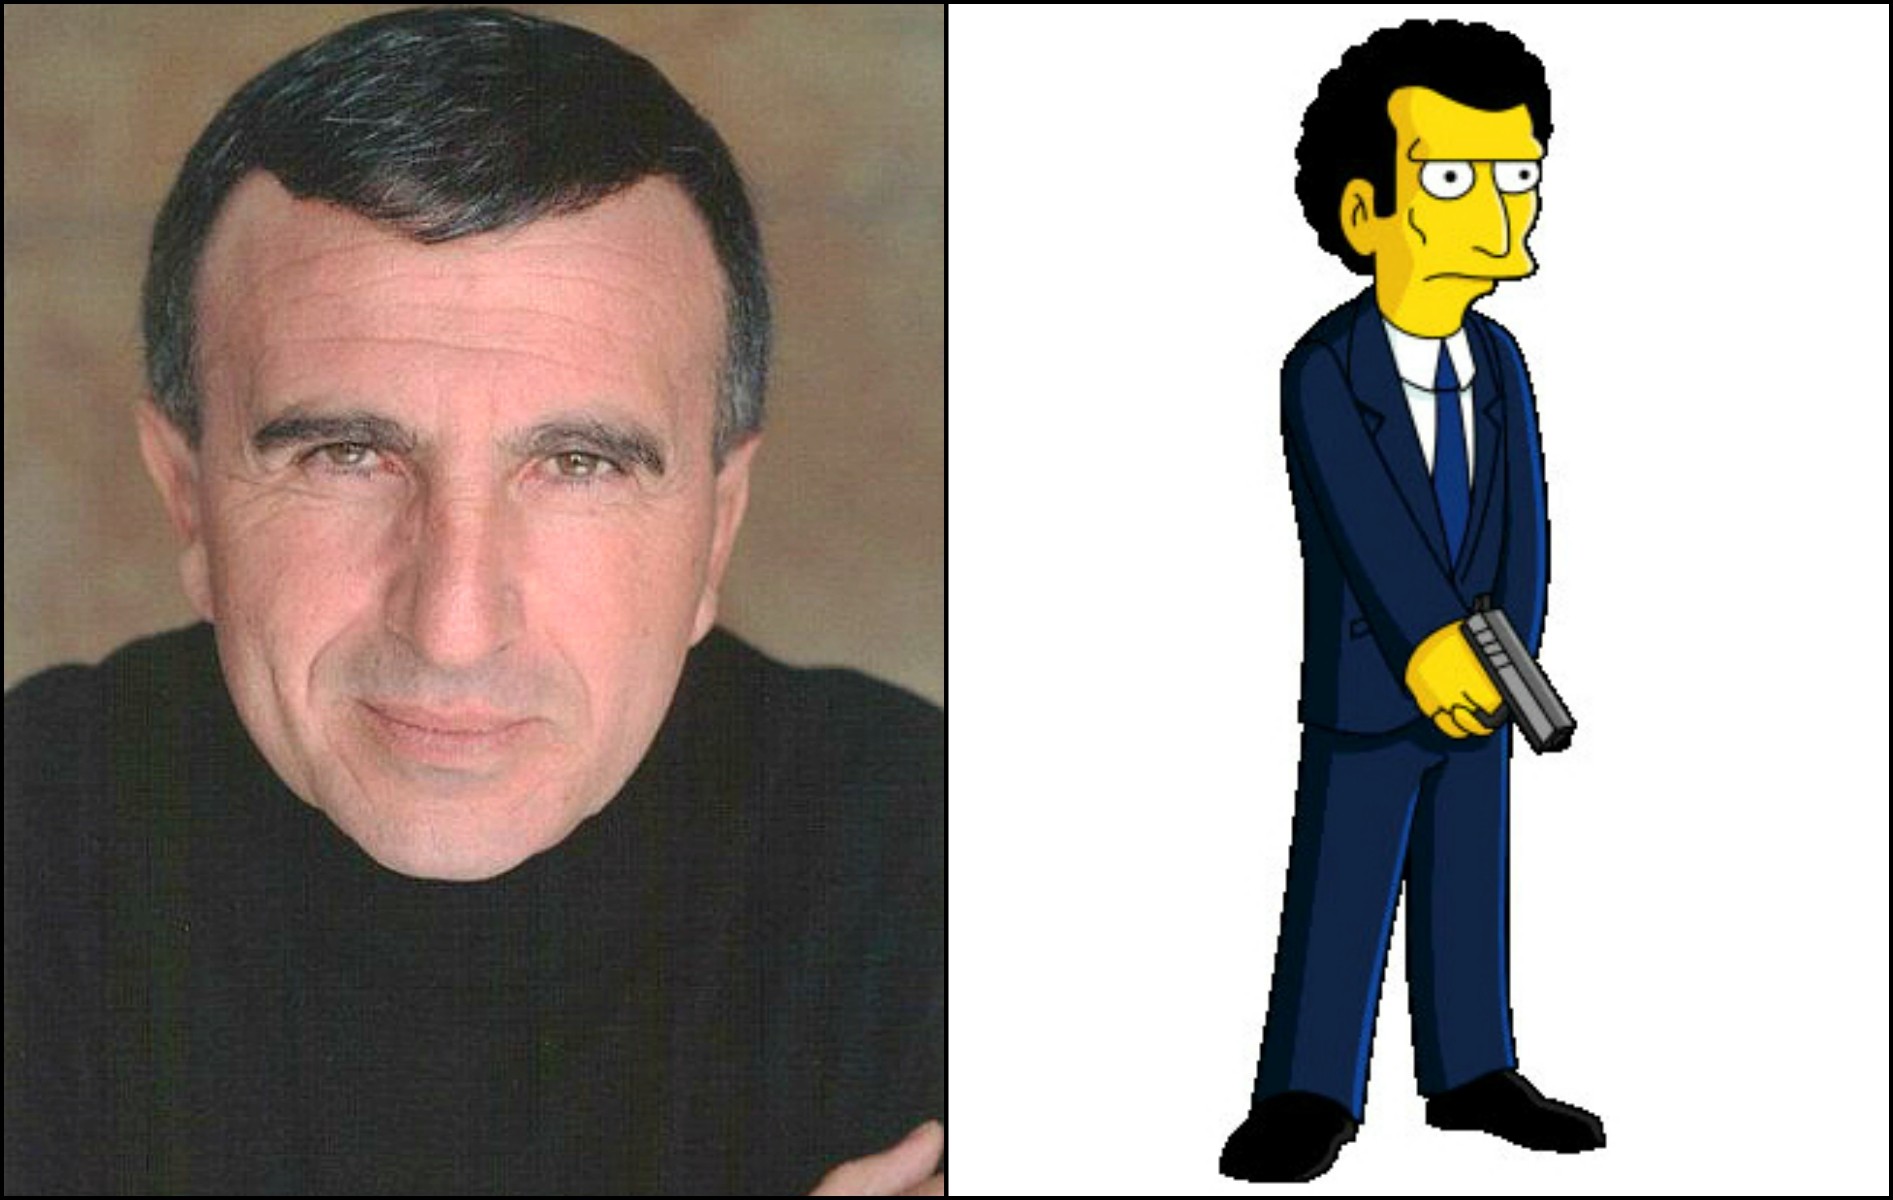 Frank Sivero e o personagem de 'Os Simpsons' supostamente inspirado no papel dele em 'Os Bons Companheiros'. (Foto: Divulgação e Reprodução)